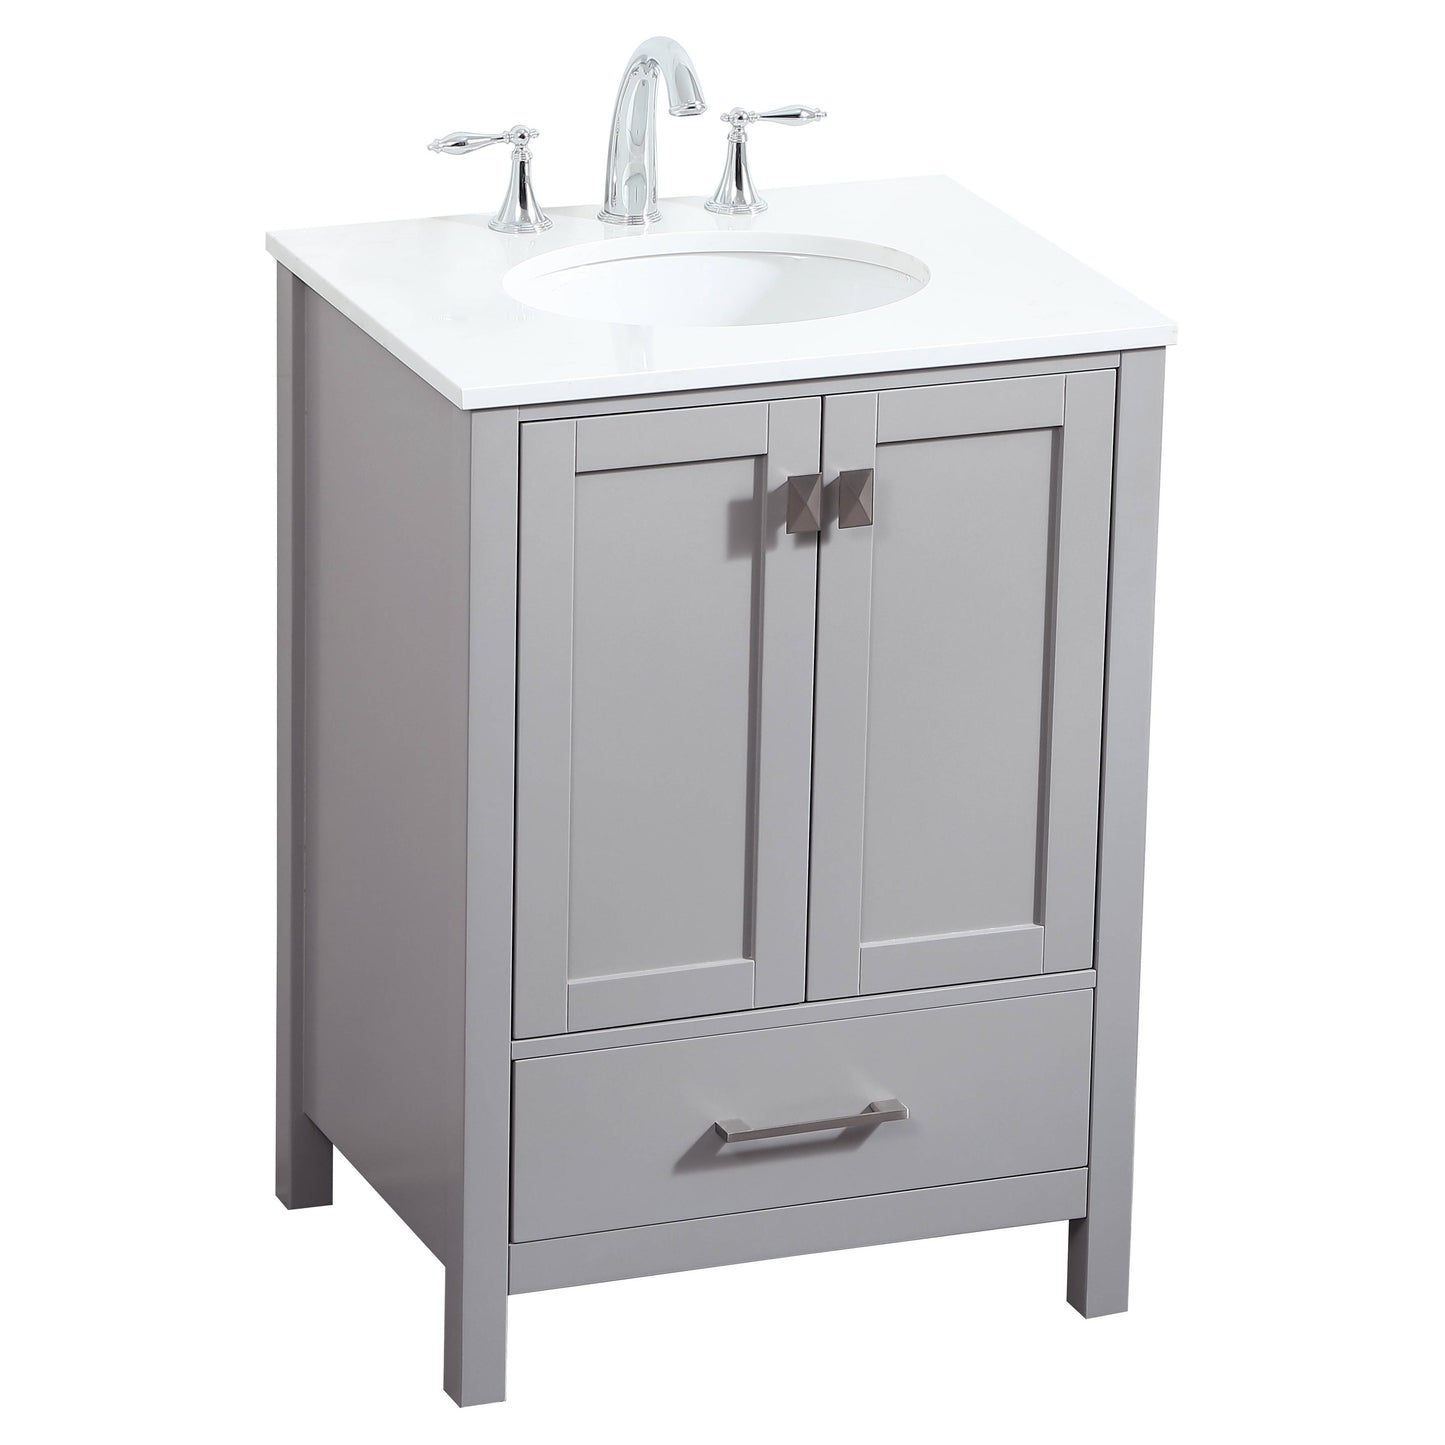 VF18824GR 24" Single Bathroom Vanity in Grey